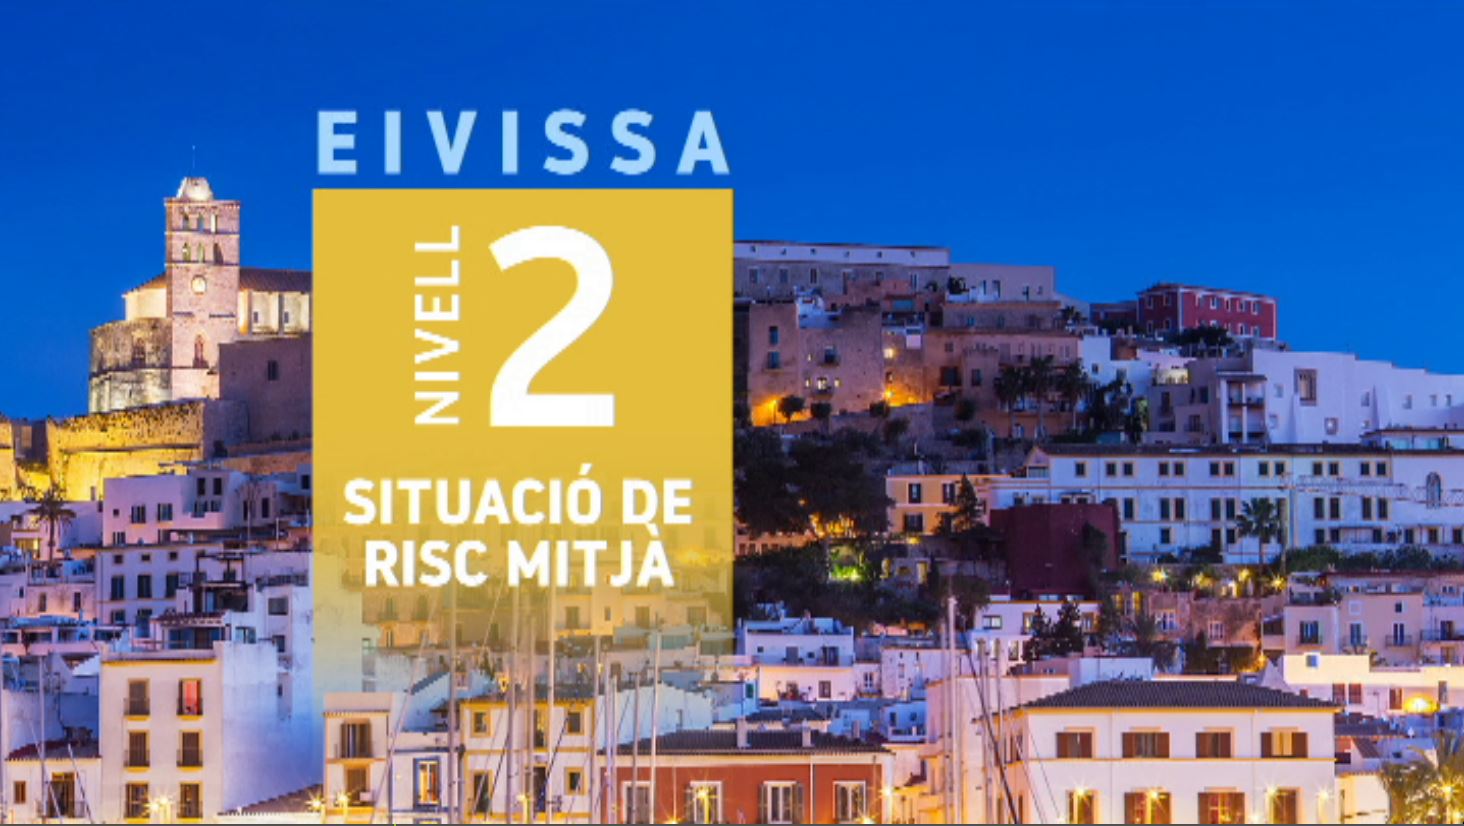 Eivissa baixa al nivell 2 gràcies a la bona evolució dels contagis